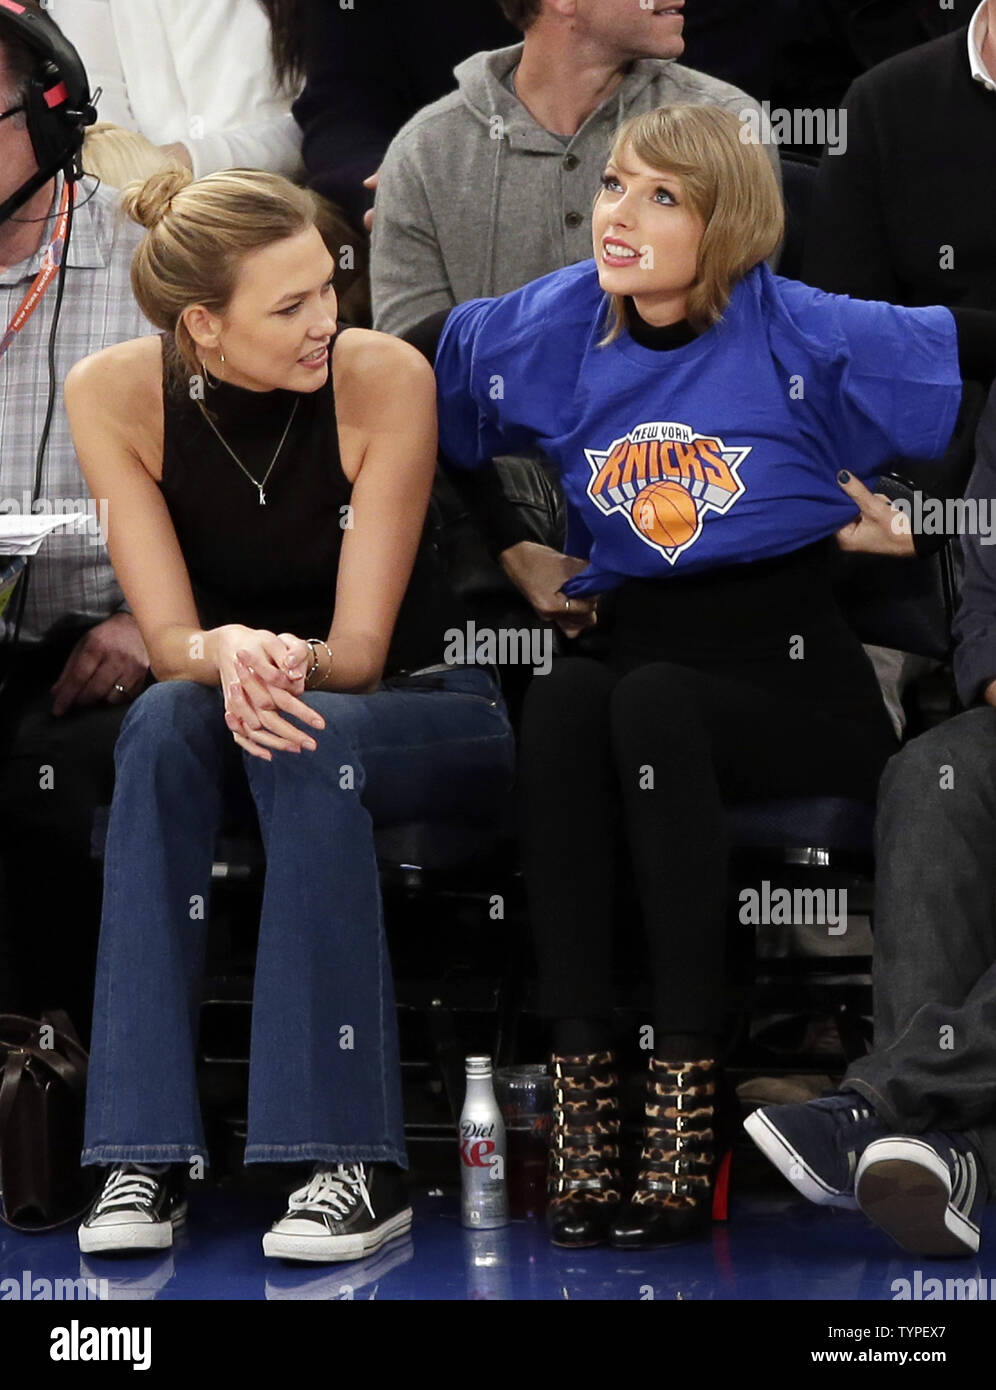 Karlie Kloss und Taylor Swift beobachten Sie die New York Knicks die  Chicago Bulls im Madison Square Garden in New York City am 29. Oktober 2014  spielen. UPI/John angelillo Stockfotografie - Alamy